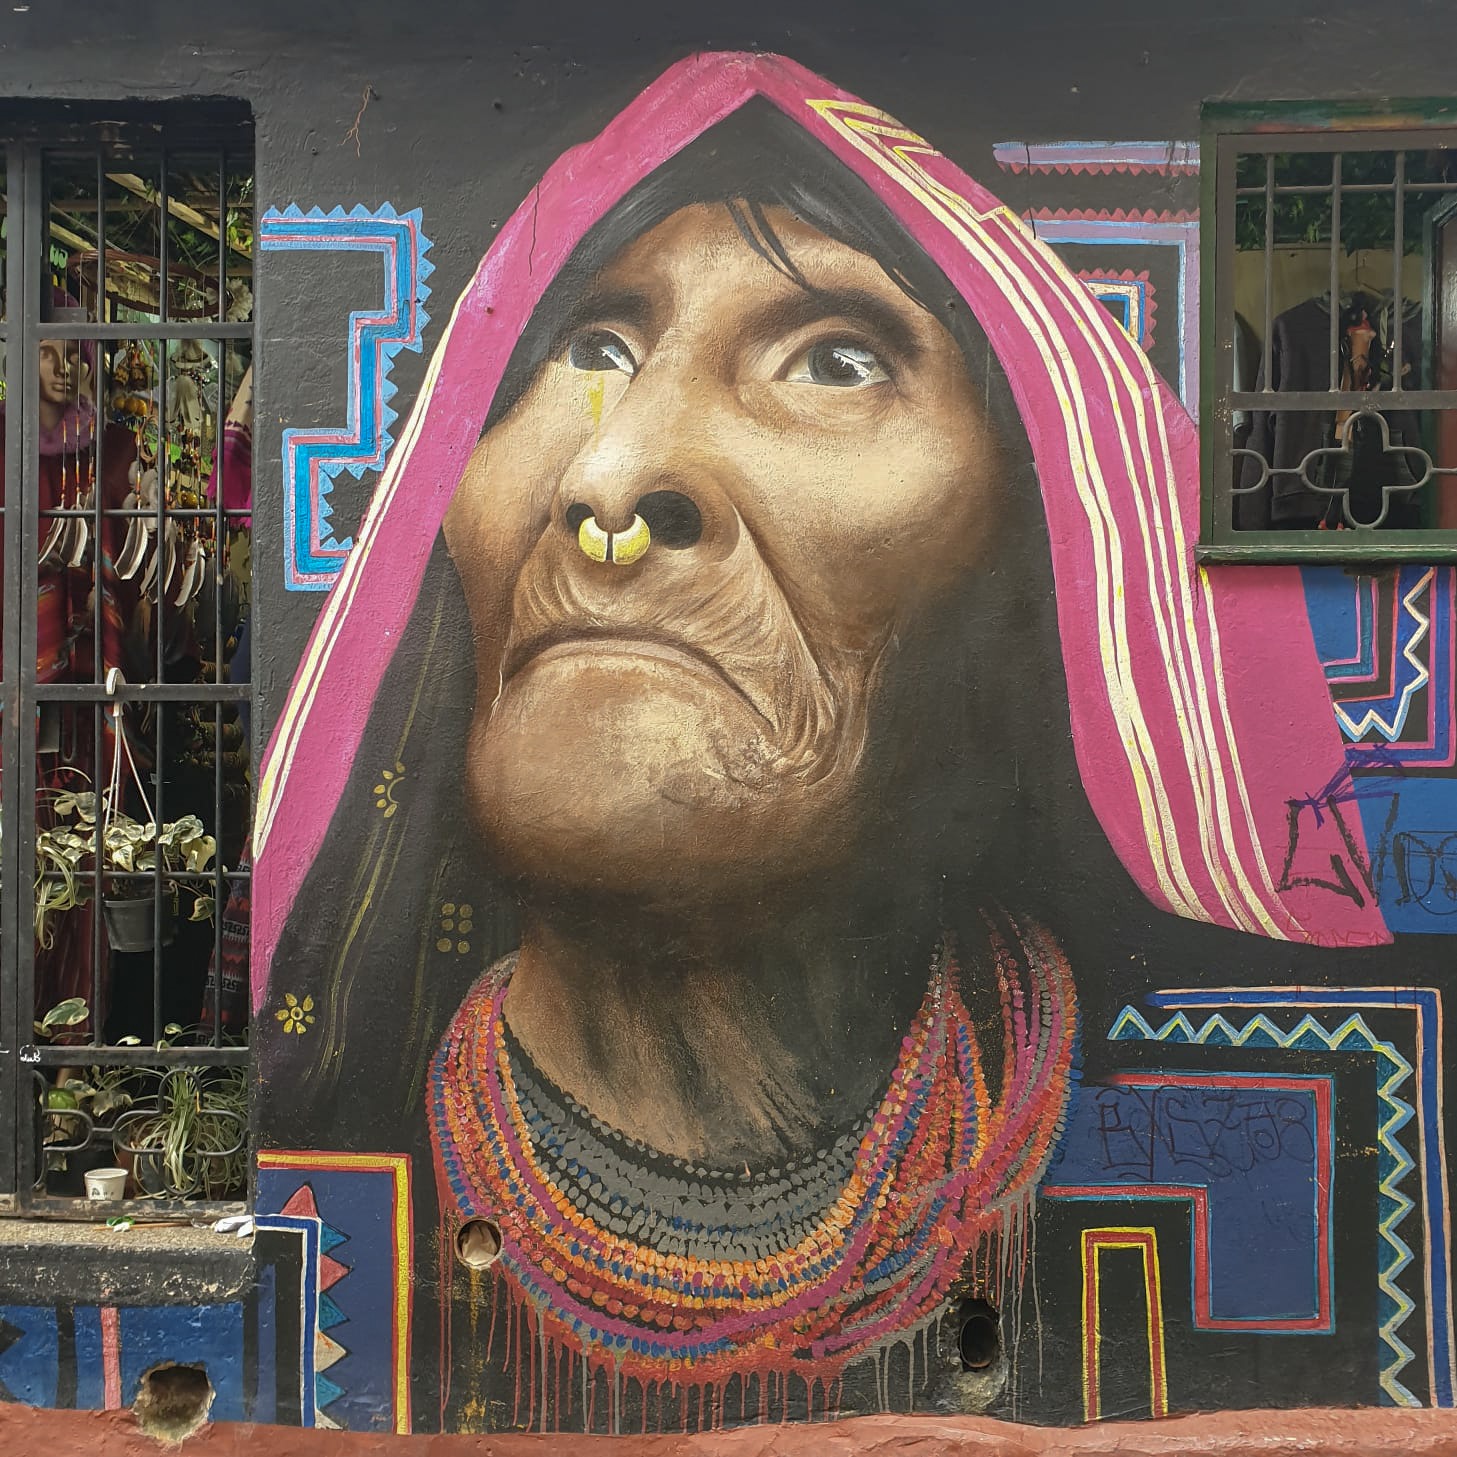 Bogotá, the city of street art